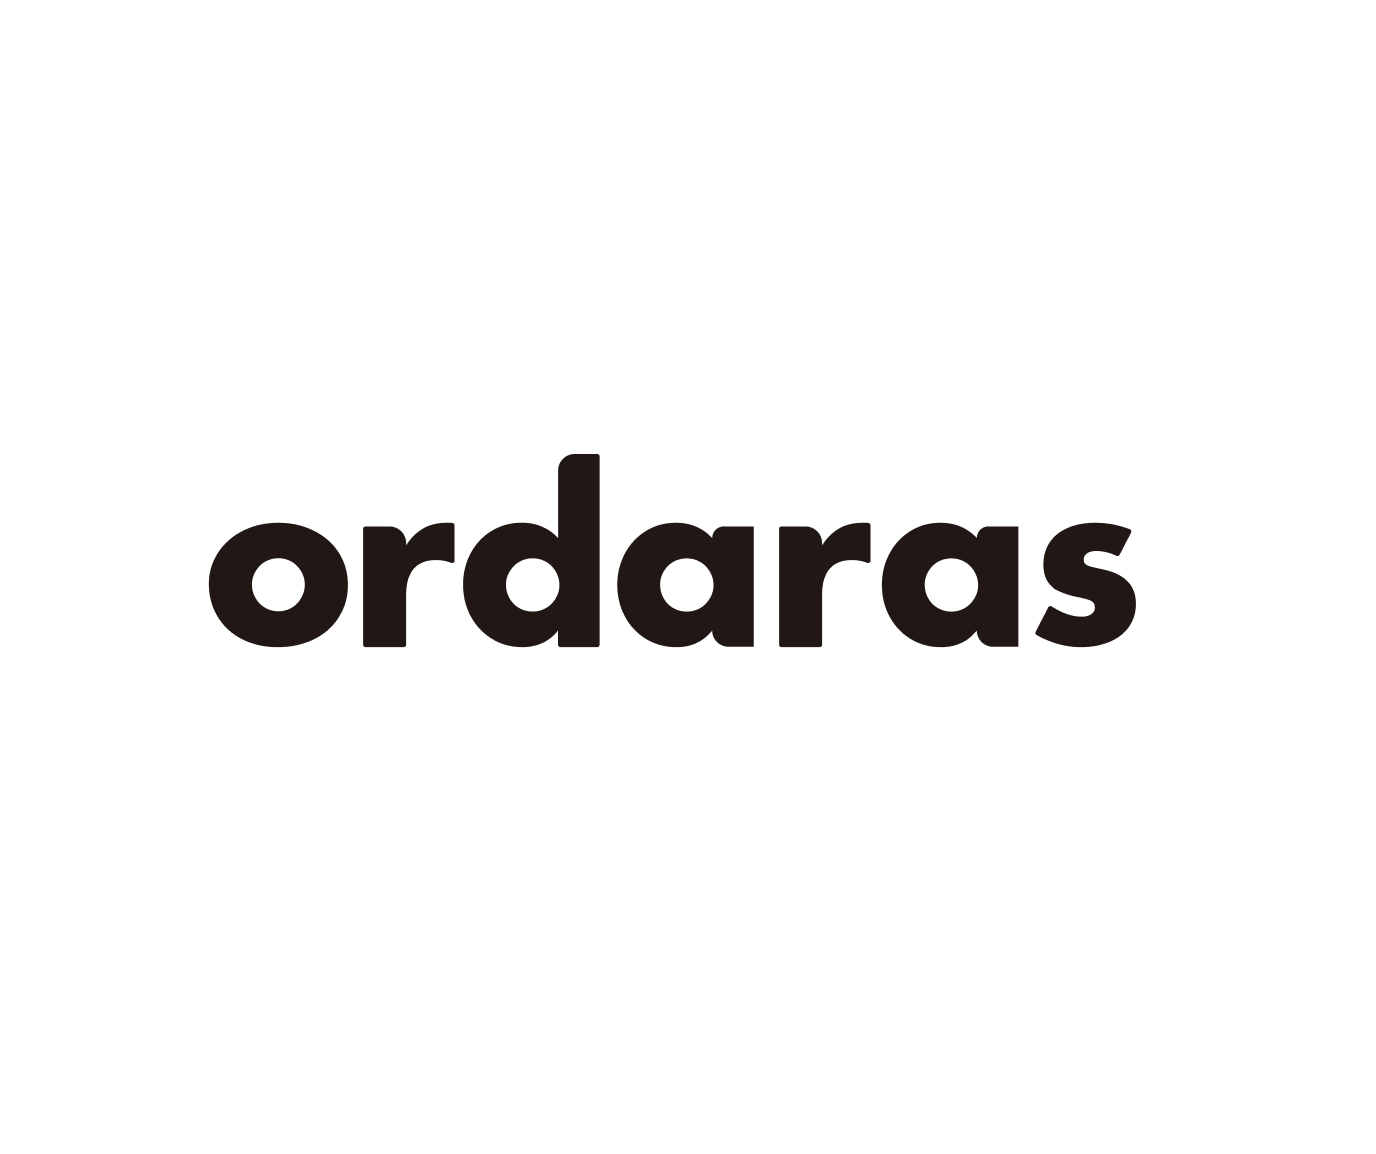 事前注文(取置注文)ウェブアプリケーション「ordaras」の開発進捗につきまして